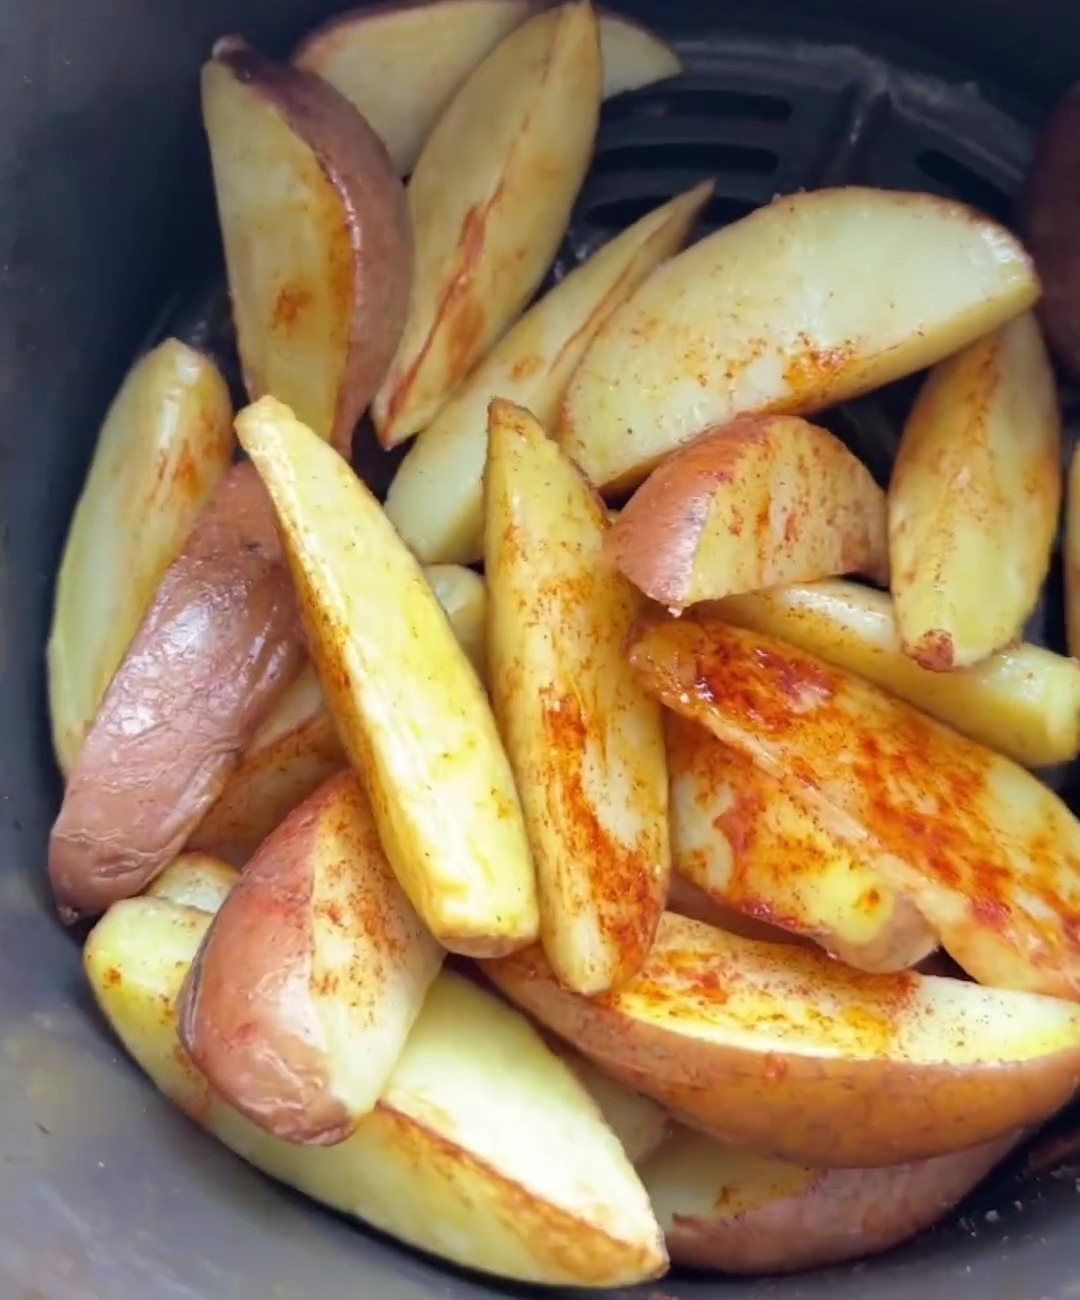 Elle enrobe les pommes de terre de paprika, d'huile, de sel et de poivre, ajoute l'eau et fait cuire.